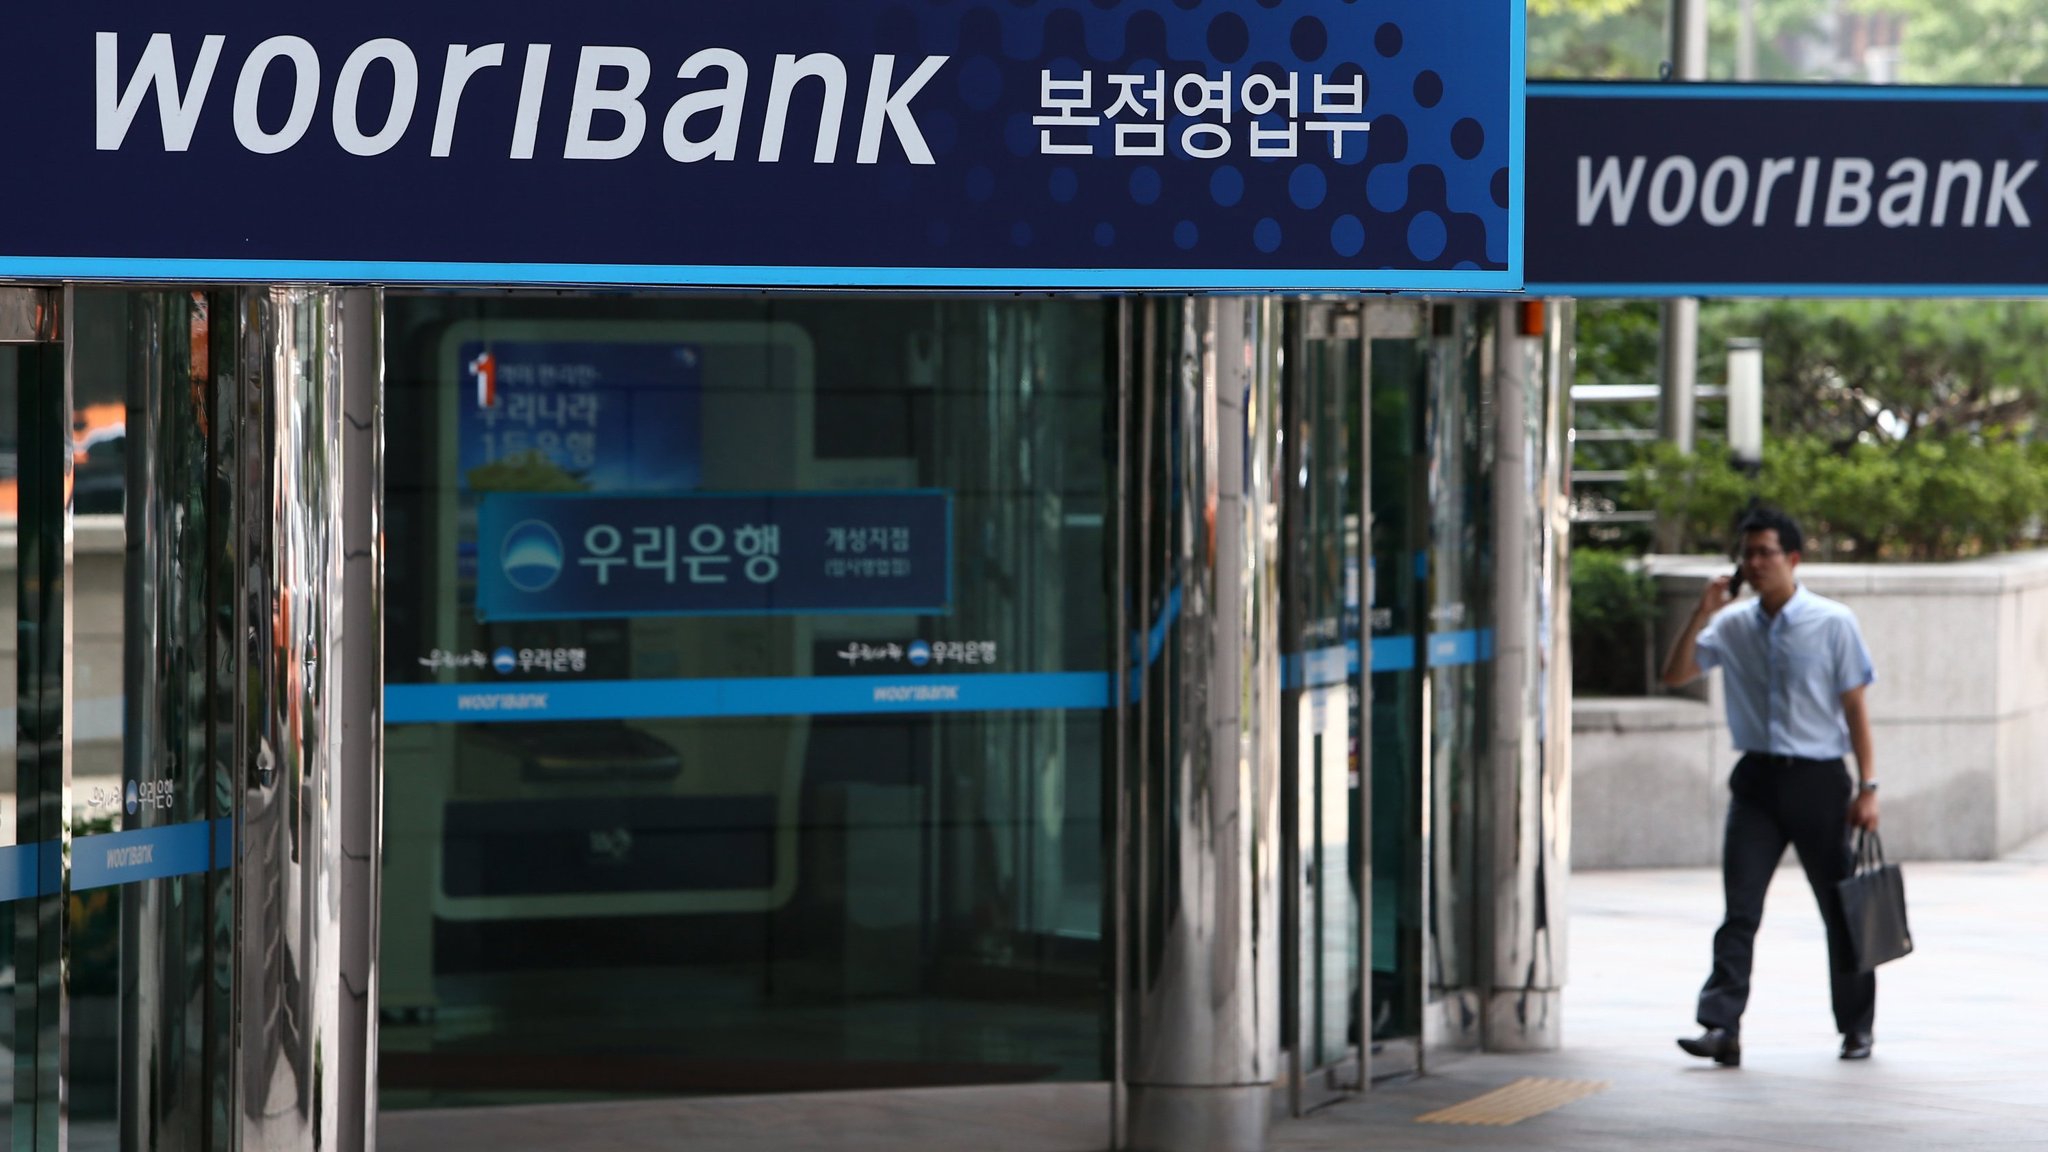 Dél-Korea mégis támogatja a bitcoint, meg is ugrott az árfolyam - Qubit